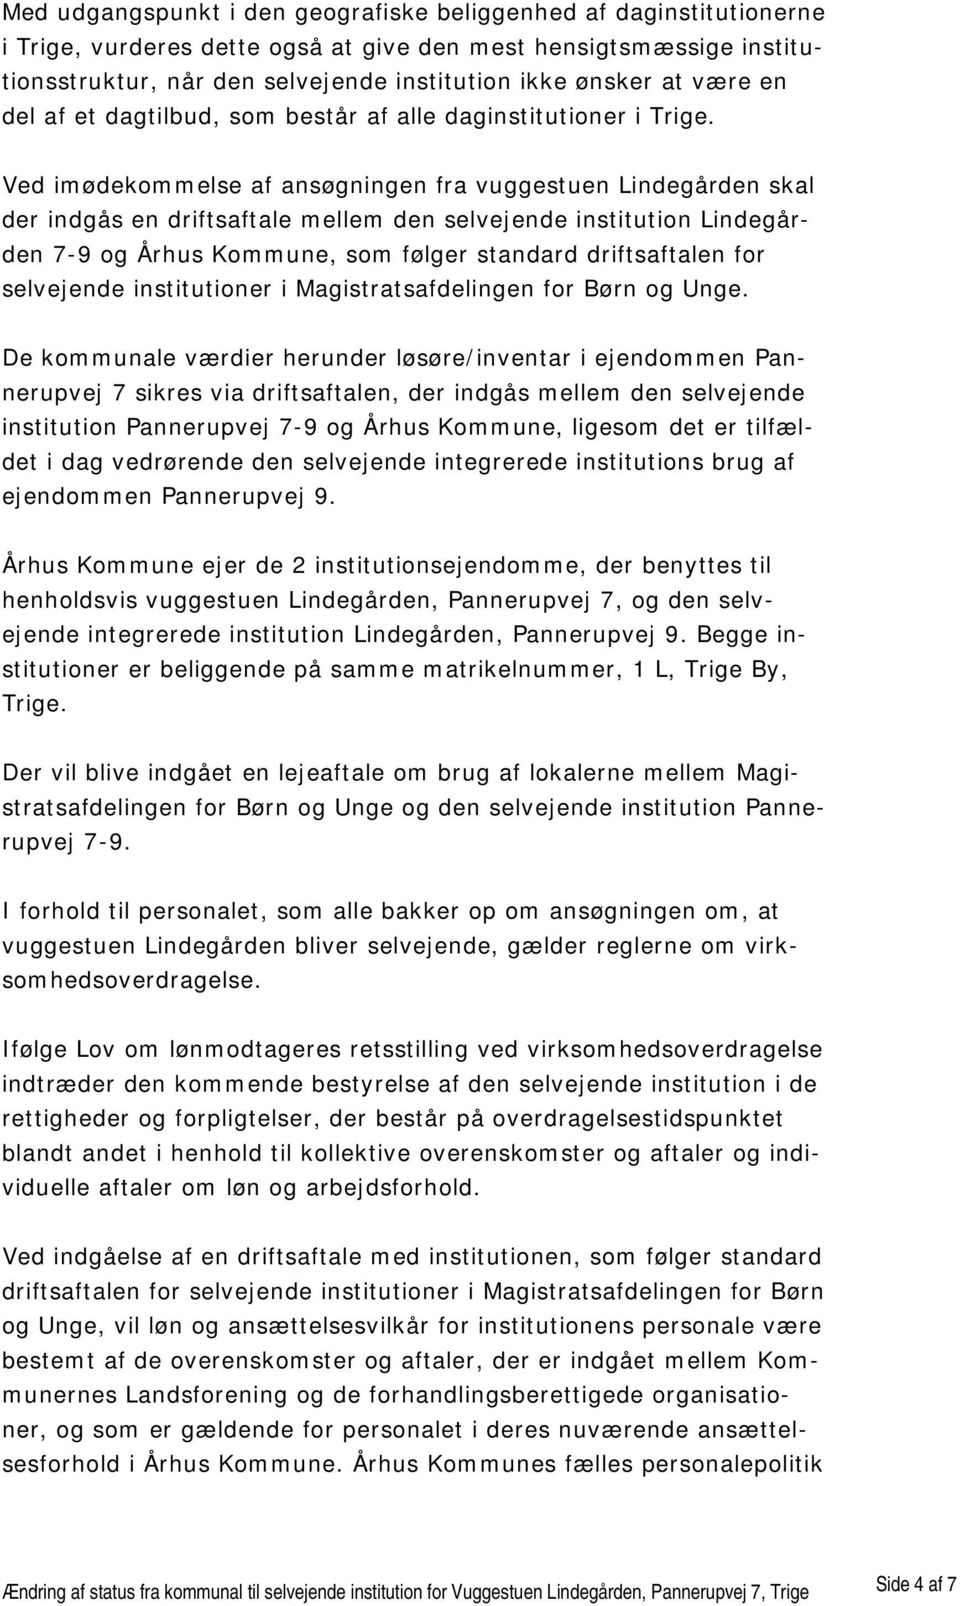 Ved imødekommelse af ansøgningen fra vuggestuen Lindegården skal der indgås en driftsaftale mellem den selvejende institution Lindegården 7-9 og Århus Kommune, som følger standard driftsaftalen for